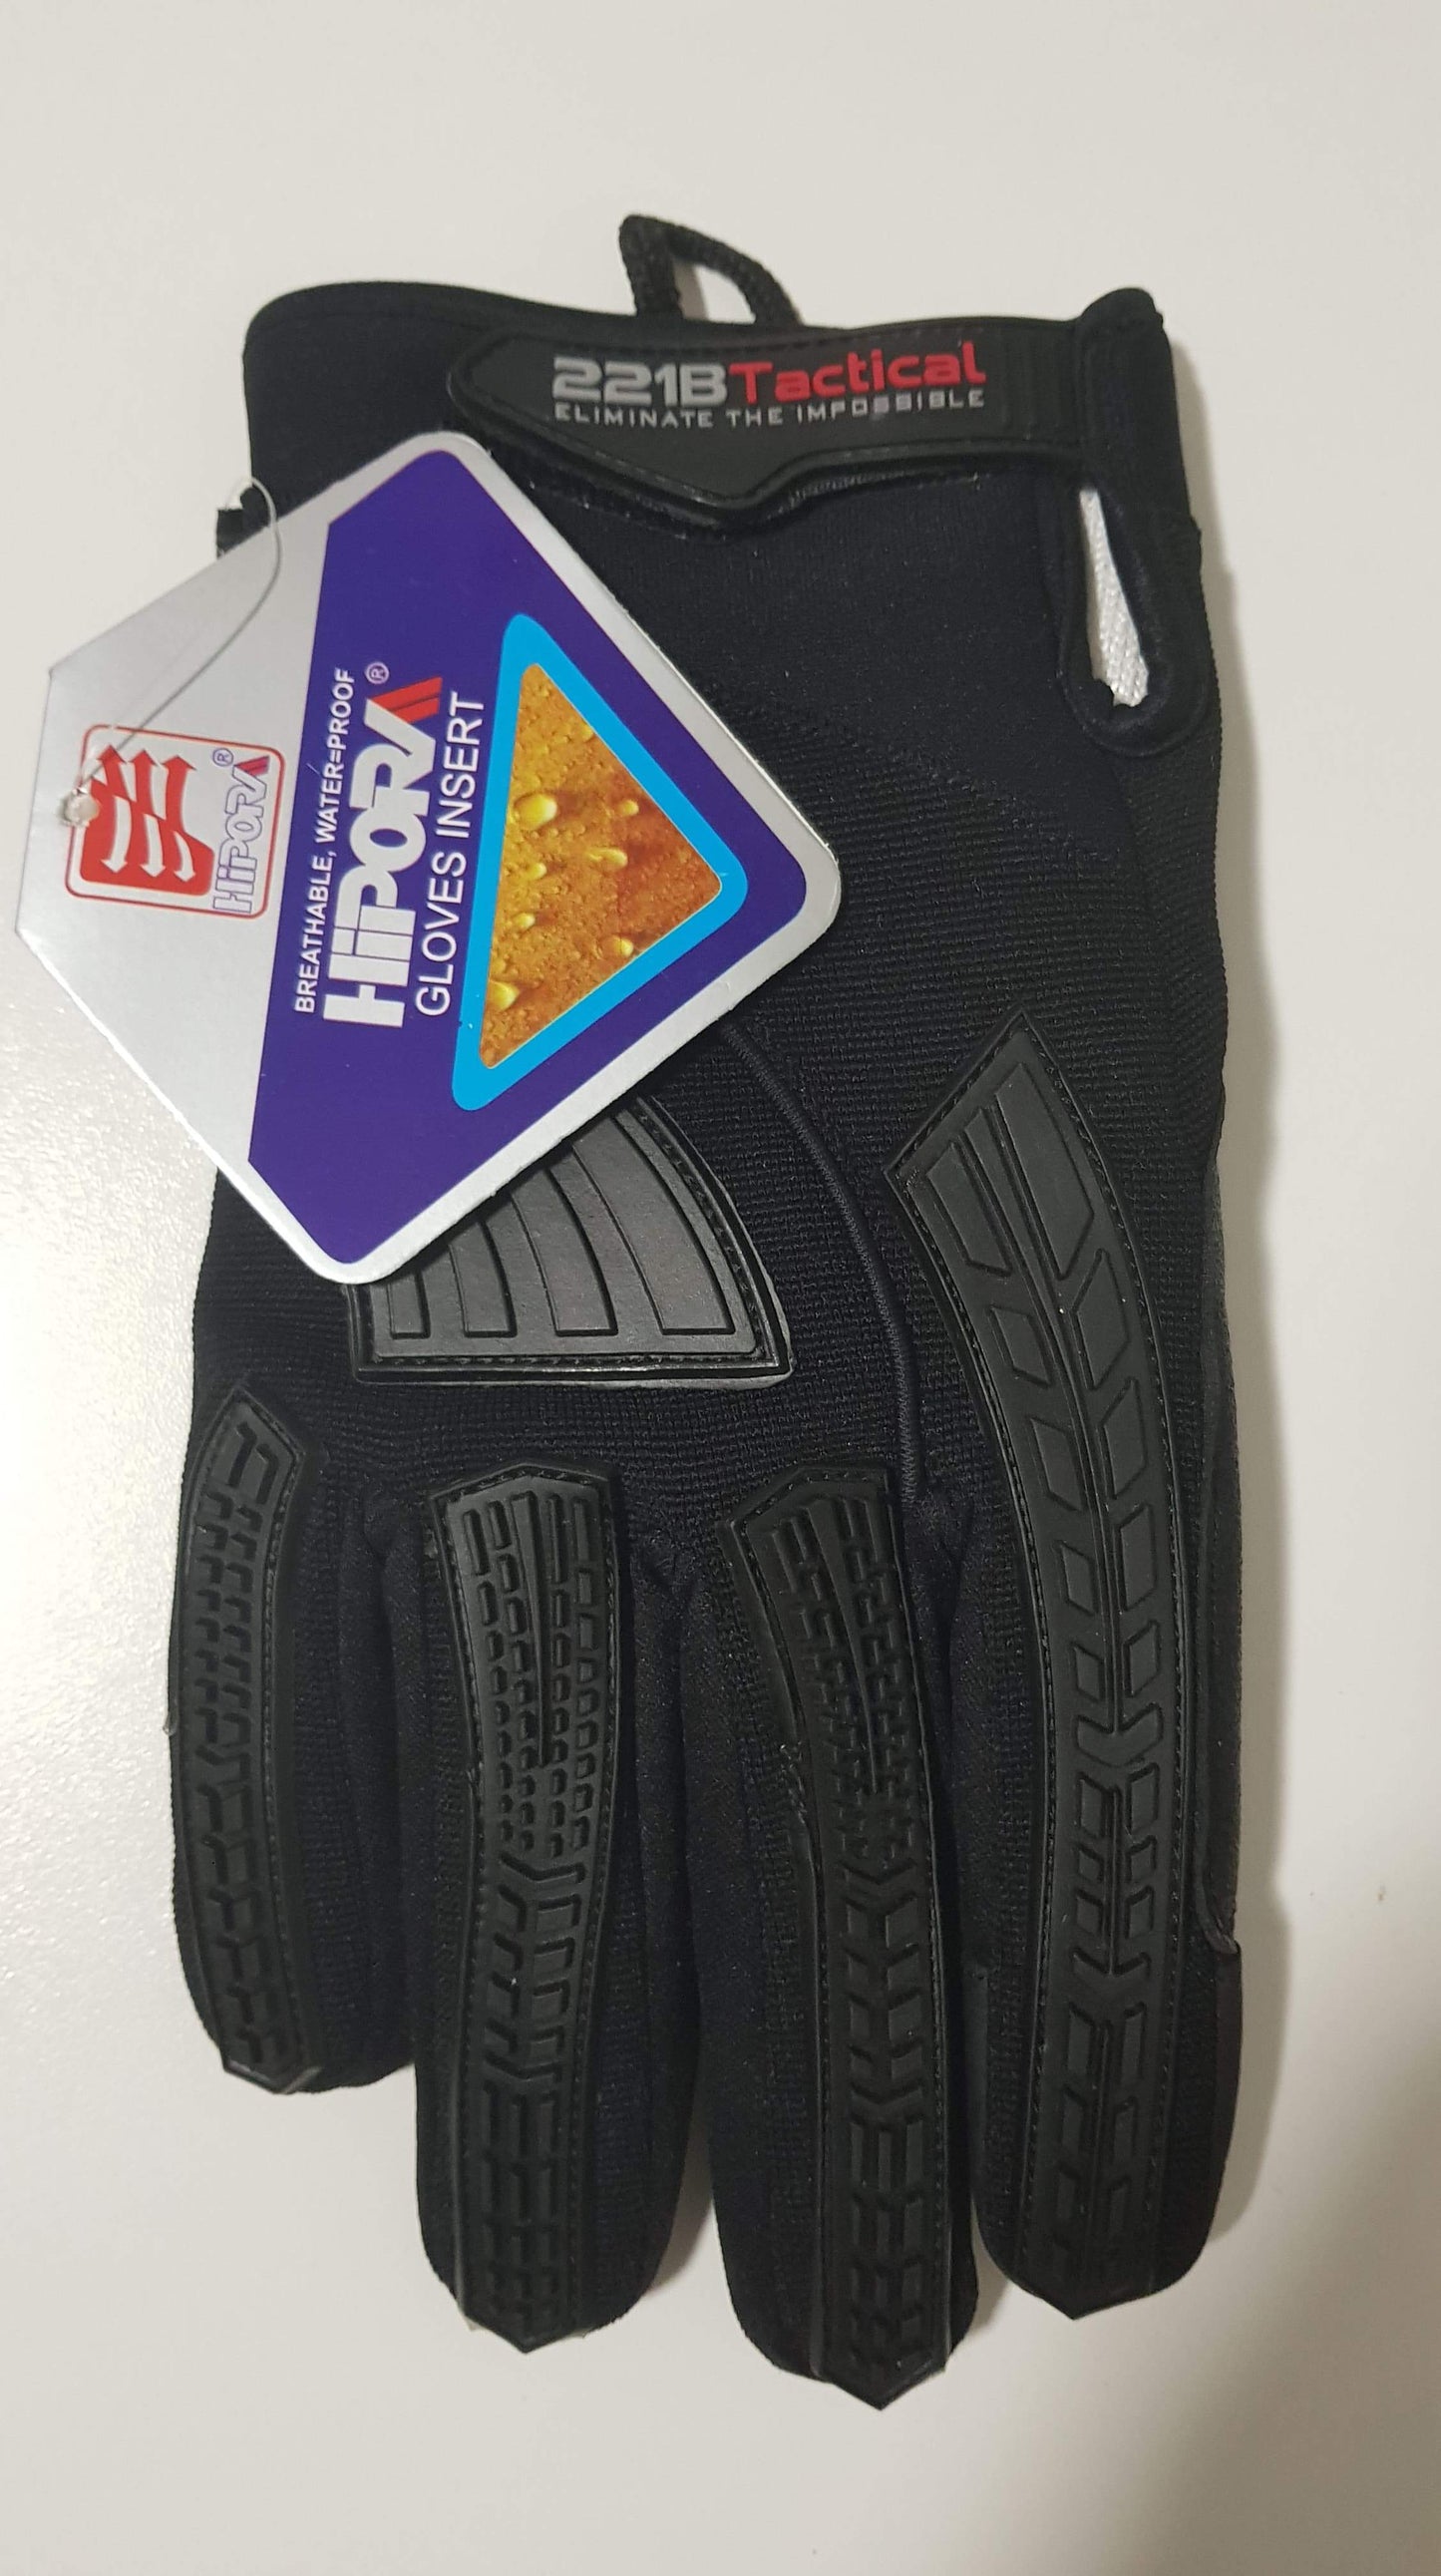 Molle Shop Australia 221B Guardian Gloves HDX + Elite Level 5 Cut/Fluid Resistant 221B Tactical Guardian Gloves HDX+Elite Level 5 Cut/Fluid Resistant